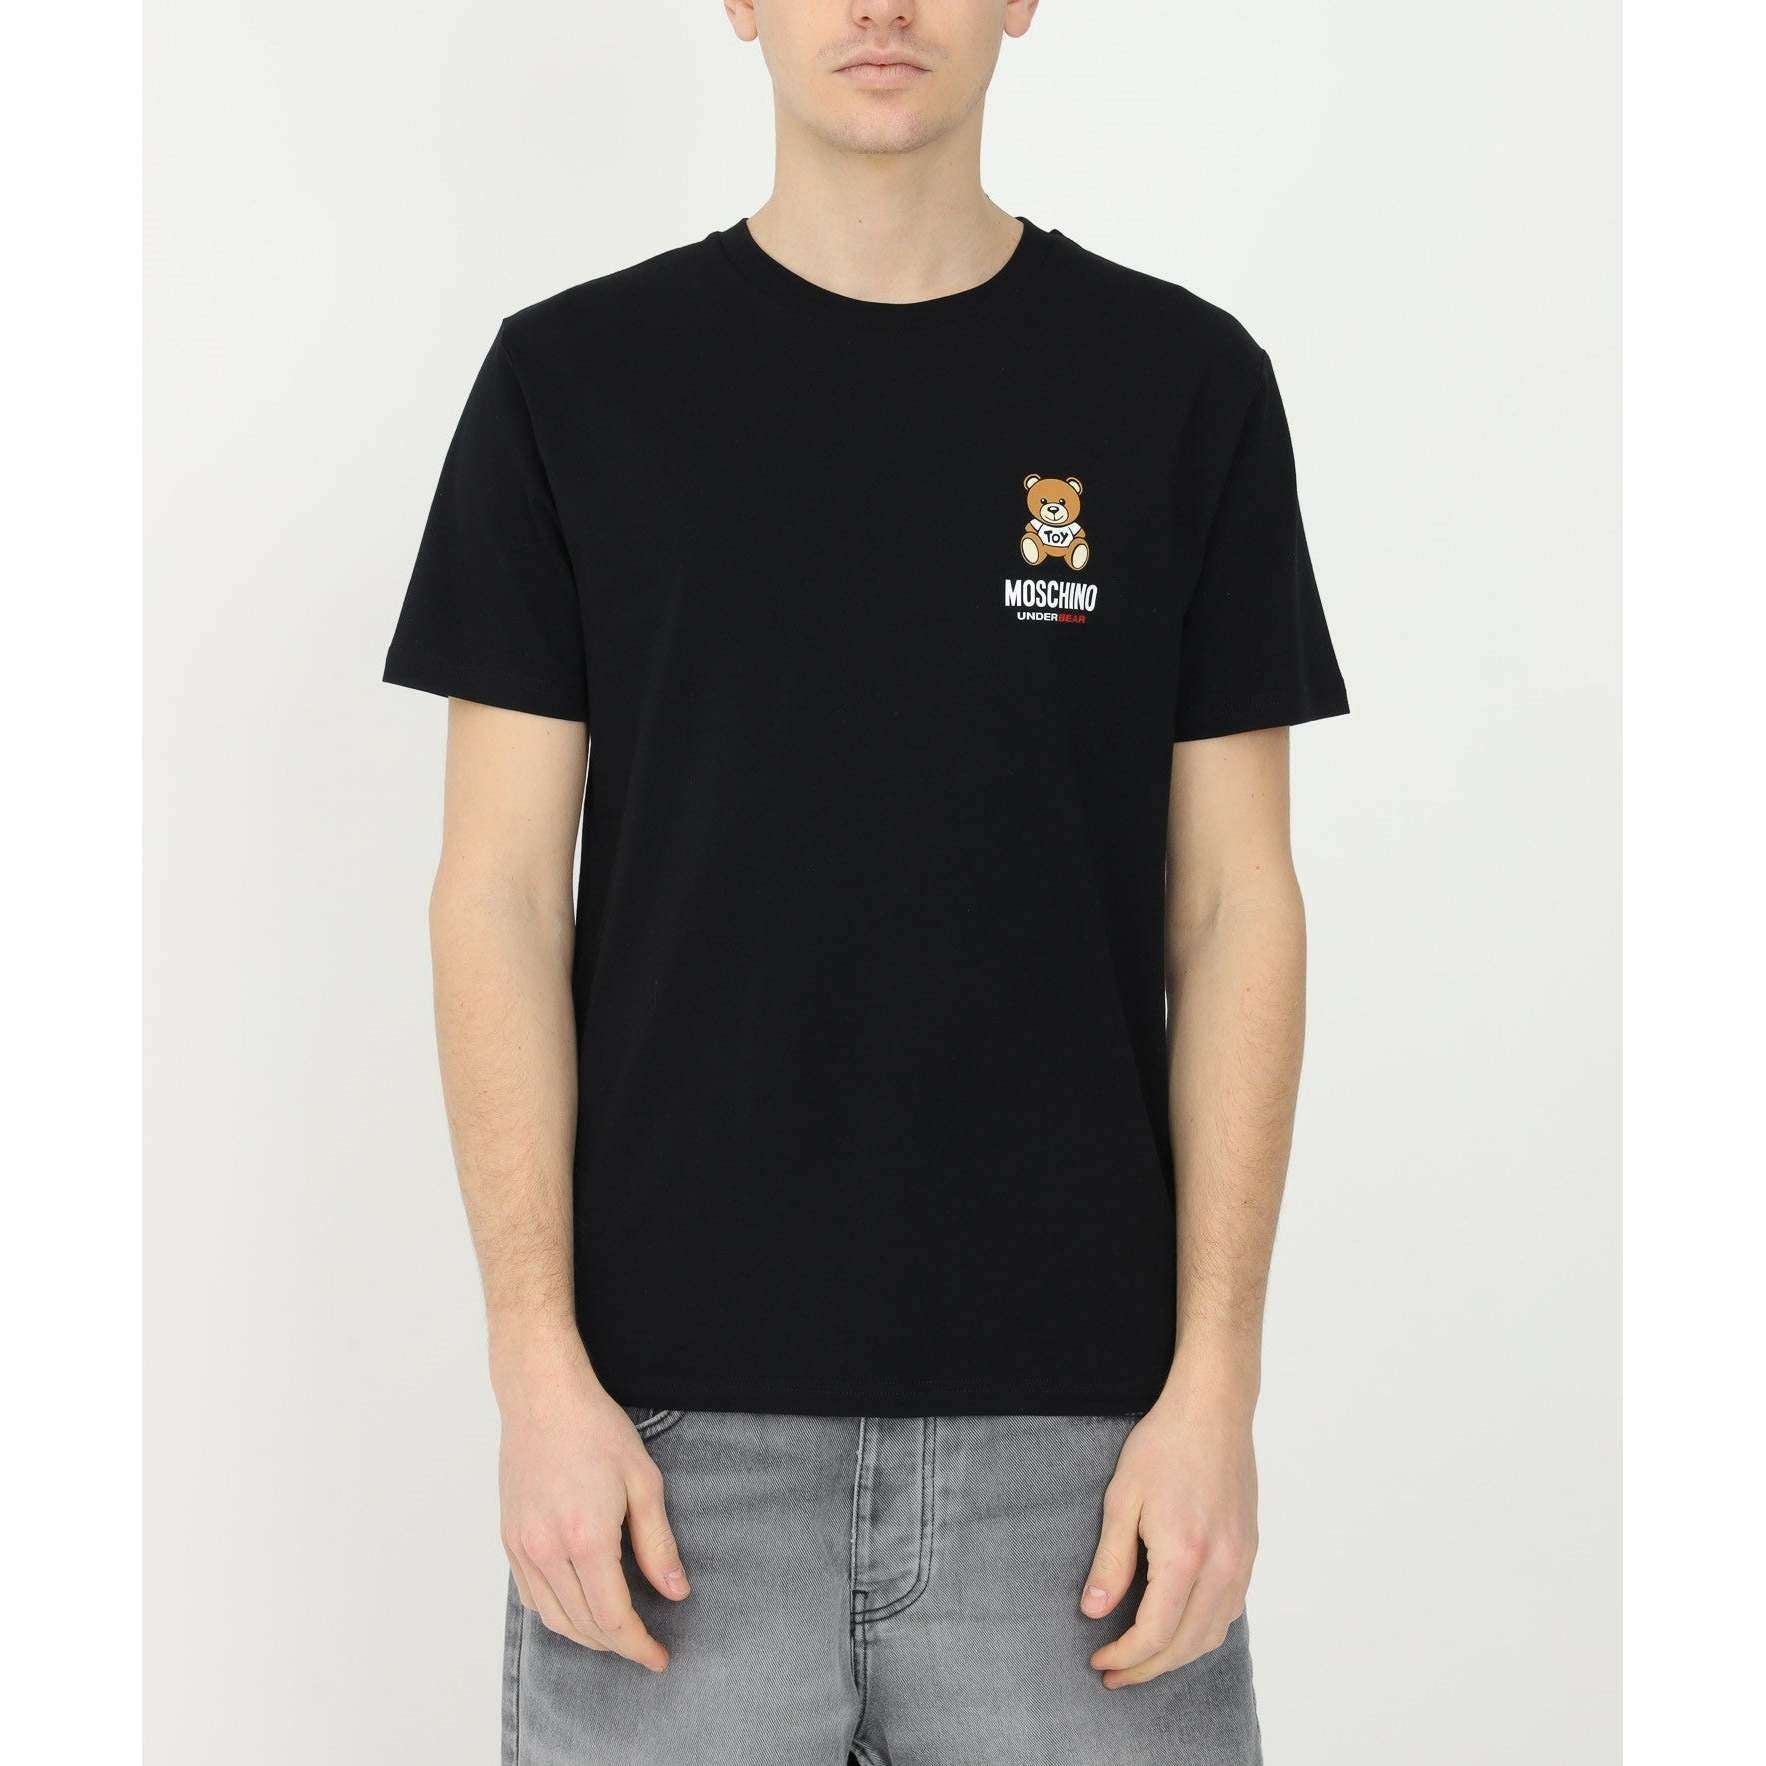 Moschino Uomo T-shirt 1924 8103-0555